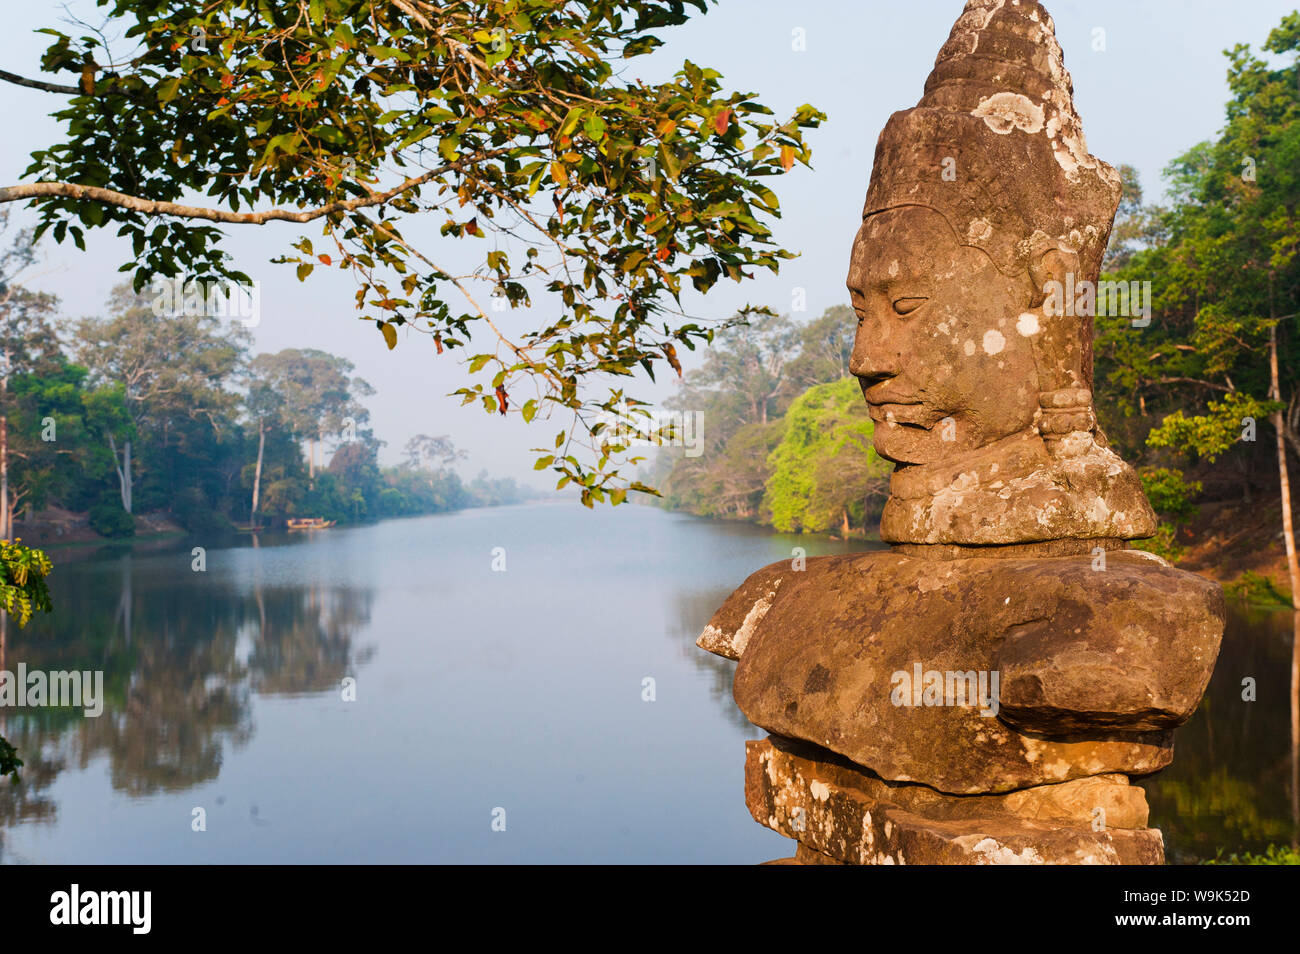 Naga Kopf Statuen am Südtor Eintritt in Angkor Thom Tempel Komplex, Angkor, UNESCO, Siem Reap, Kambodscha, Indochina, Südostasien Stockfoto